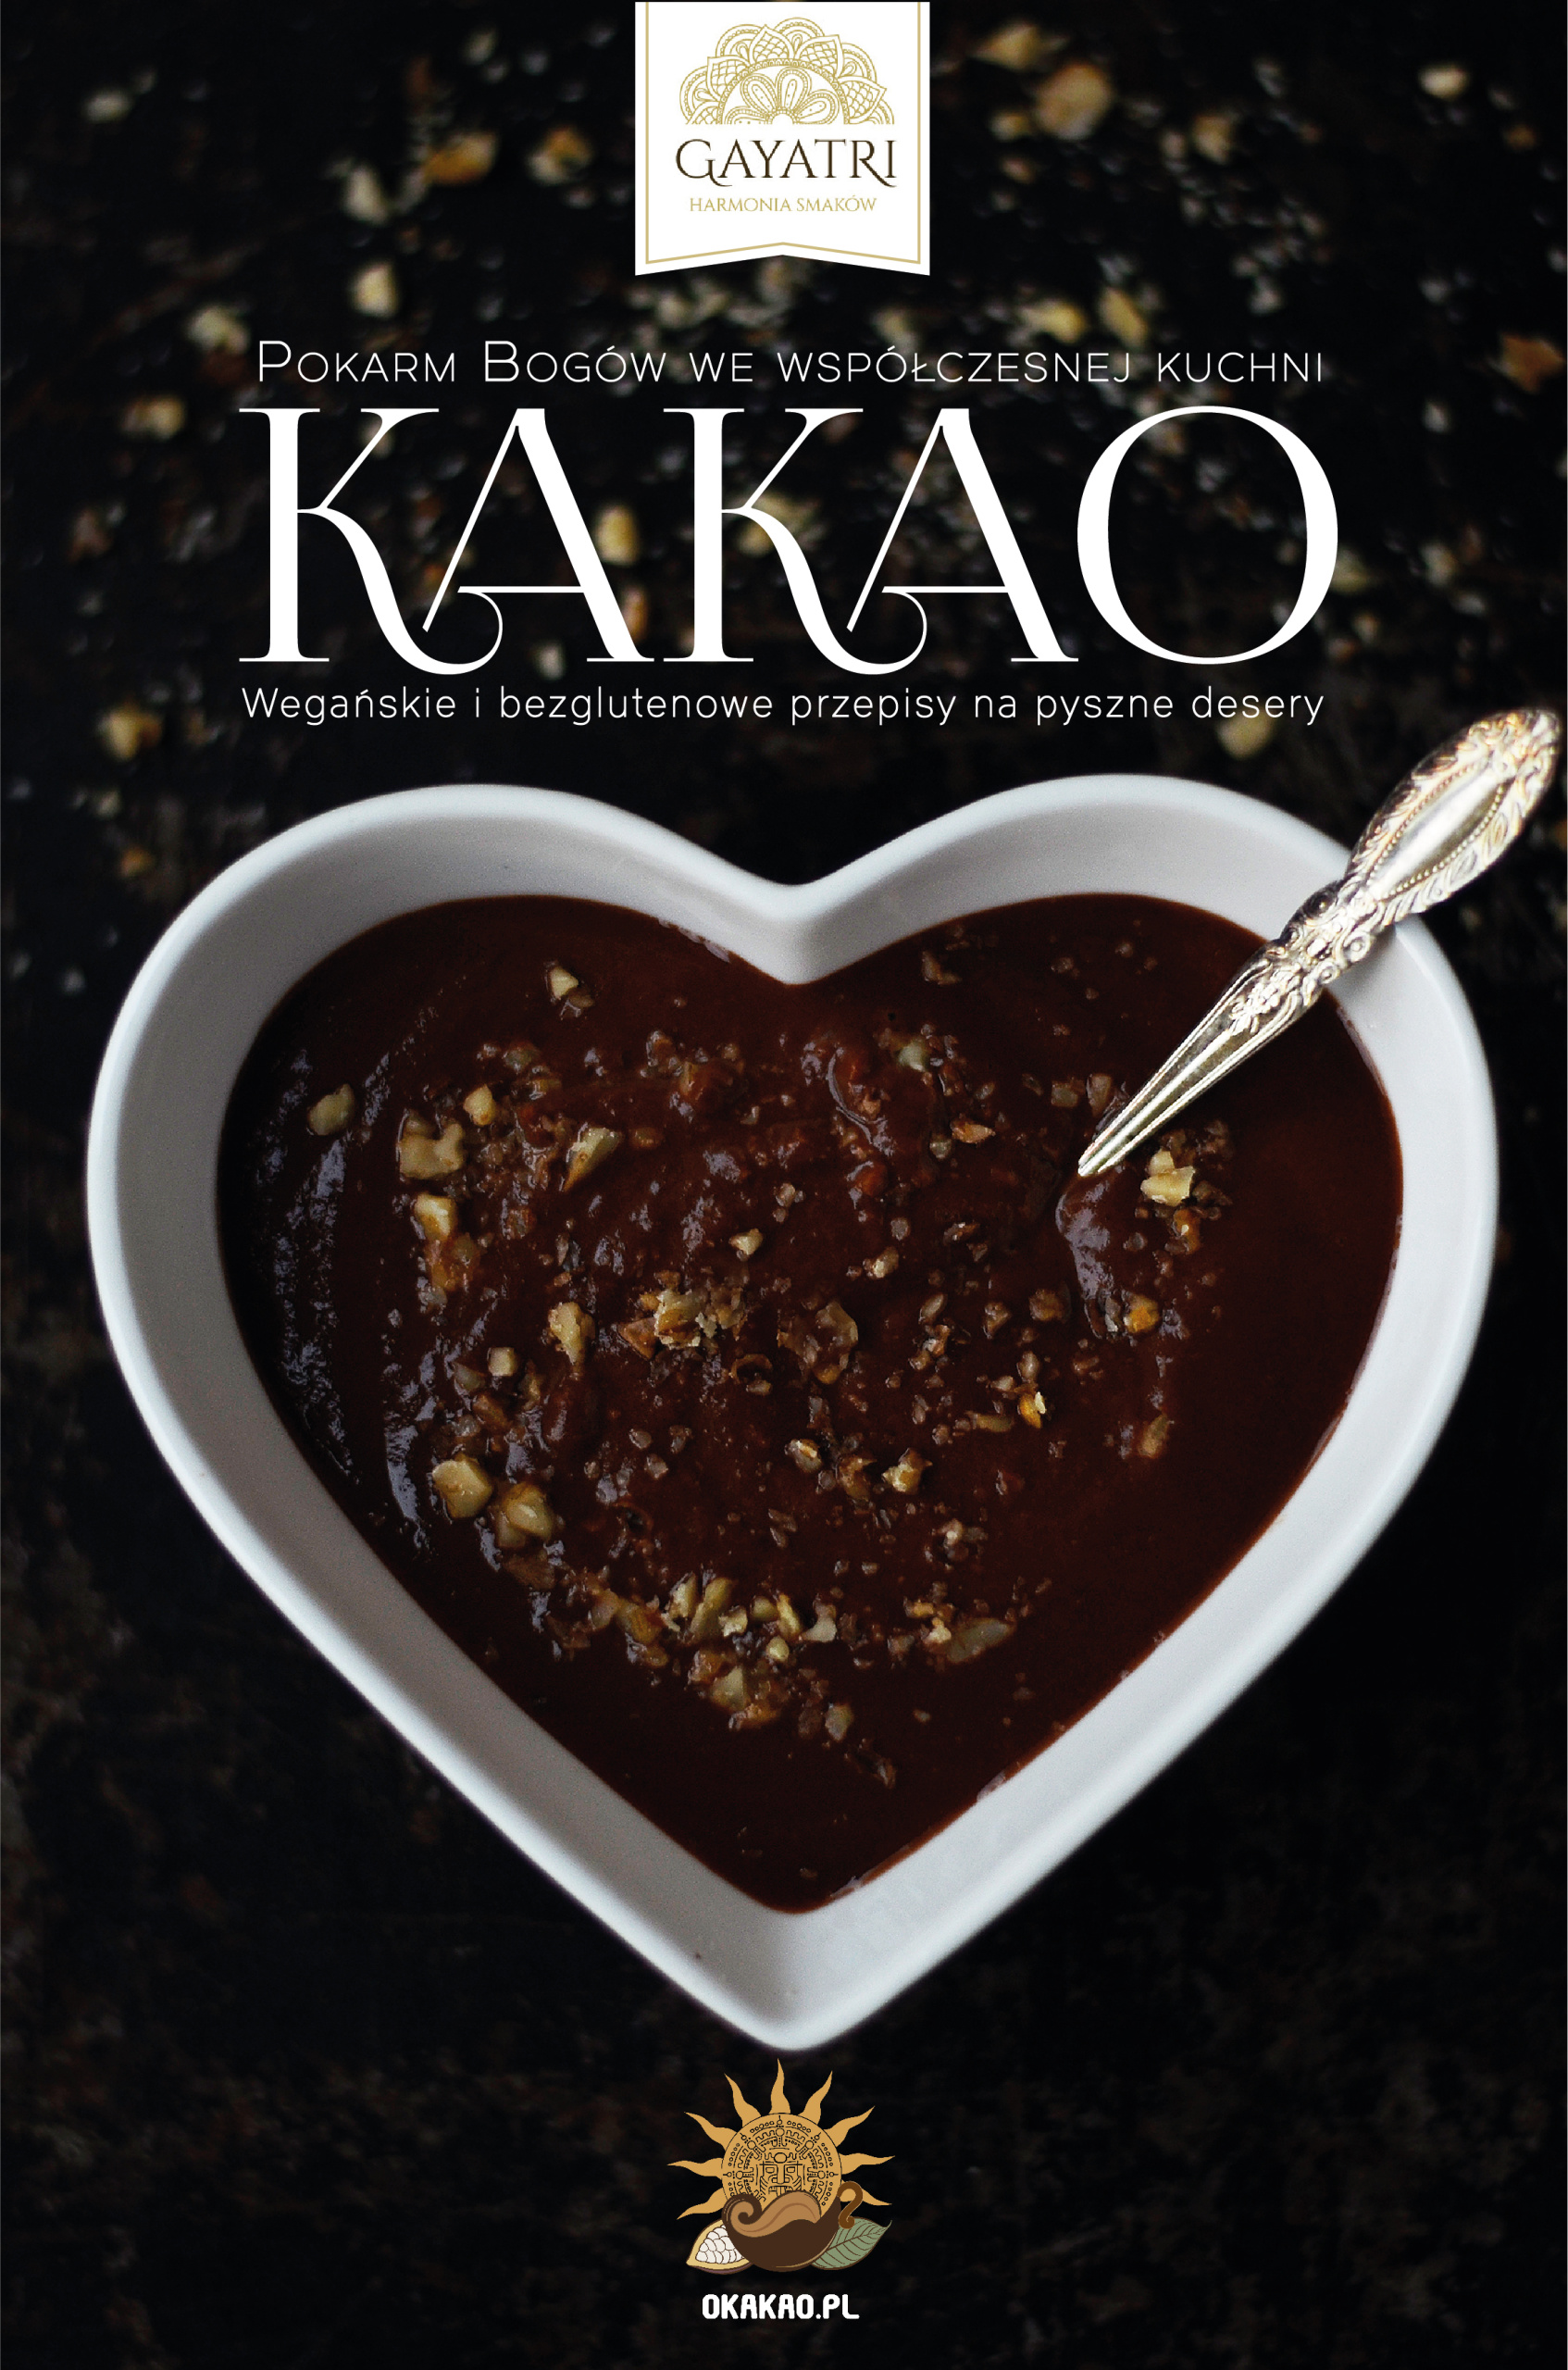 Kakao - pokarm bogów we współczesnej kuchni. Wegańskie i bezglutenowe przepisy na pyszne desery.